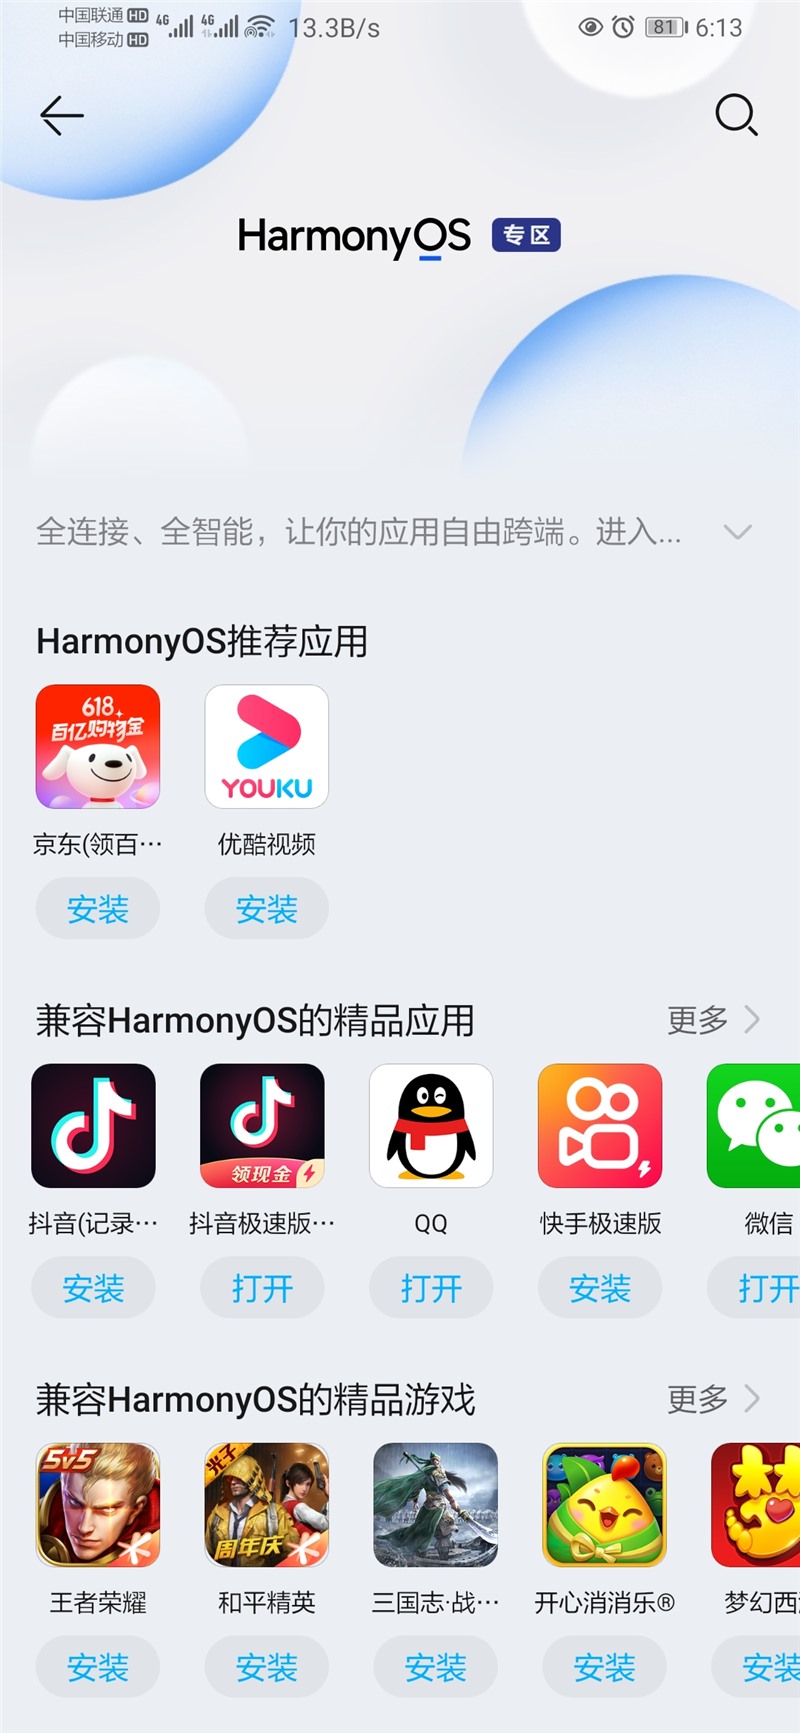 华为应用市场鸿蒙专区上线兼容 HarmonyOS 的应用 / 游戏专栏-鸿蒙开发者社区